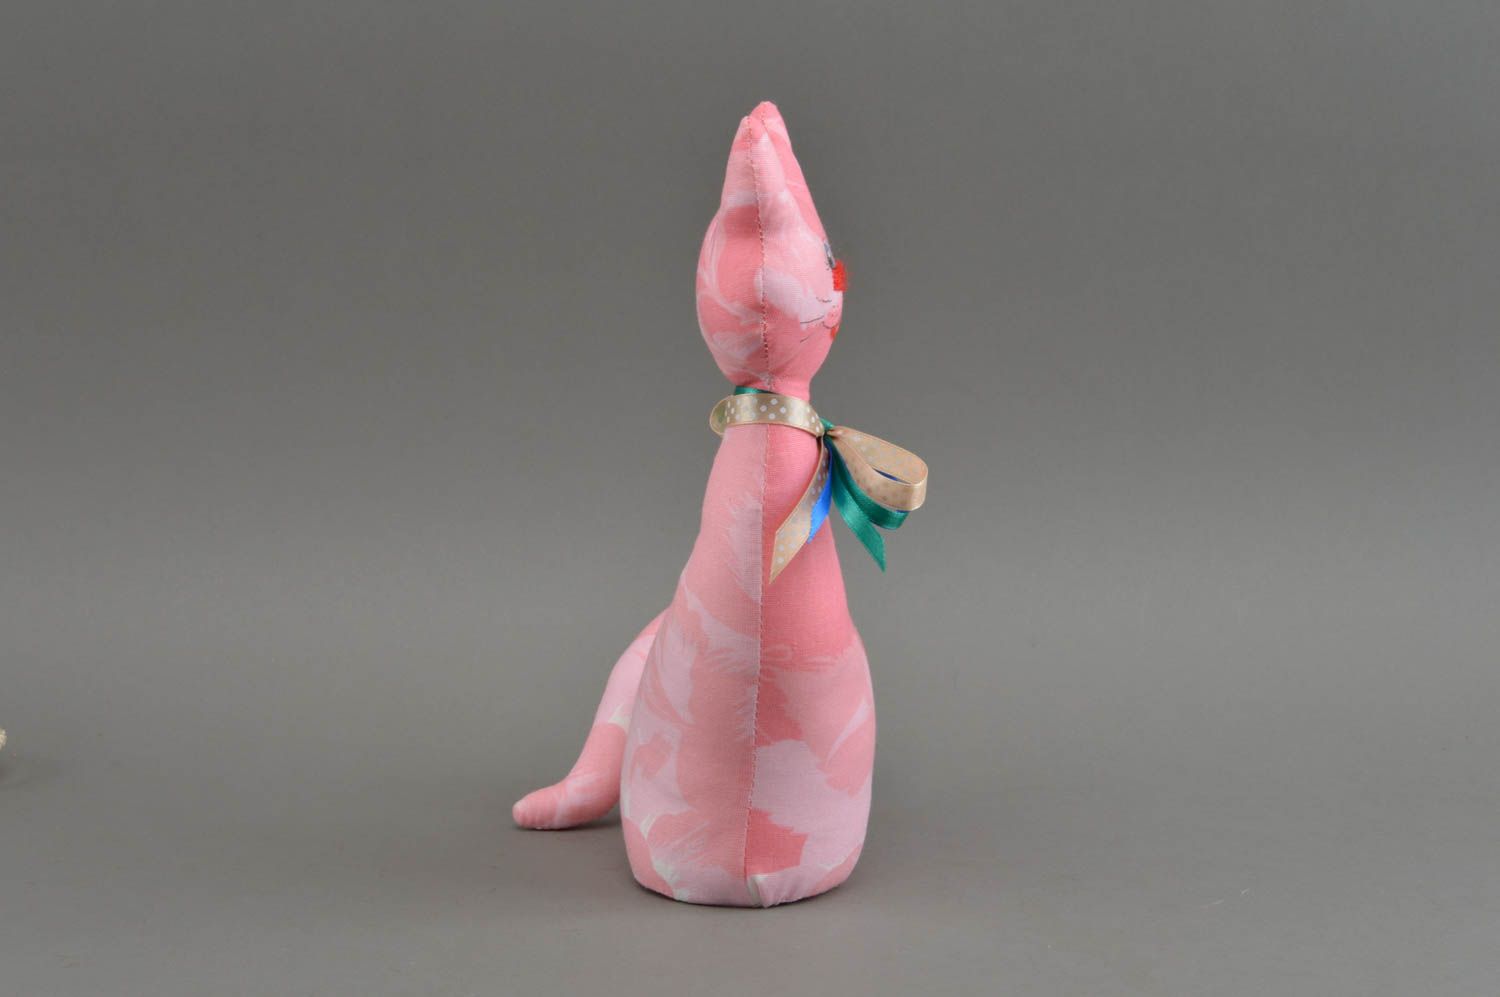 Тканевая игрушка в виде кошки небольшая розовая красивая милая ручной работы фото 3